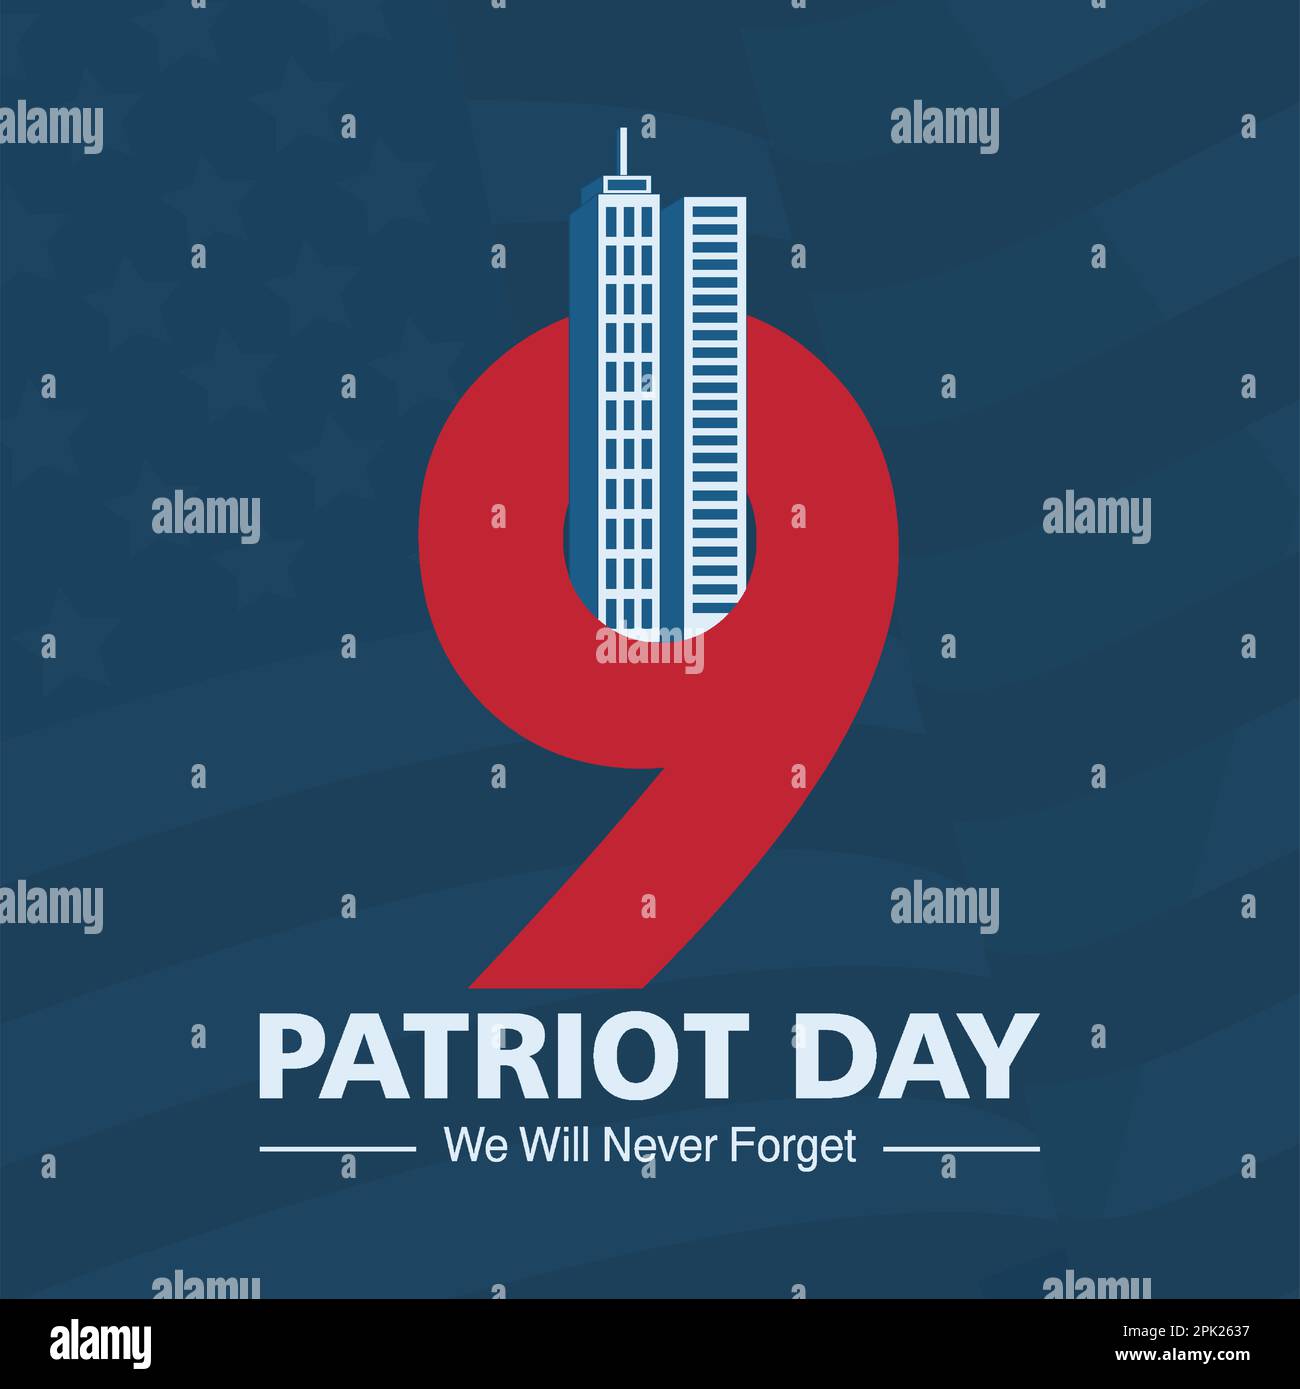 9/11 USA Denken Sie nie an den 11. September 2001. Konzeptionelle Vektordarstellung für Patriot Day USA-Poster oder -Banner, Darstellung mit modernem Vektorhintergrund Stock Vektor